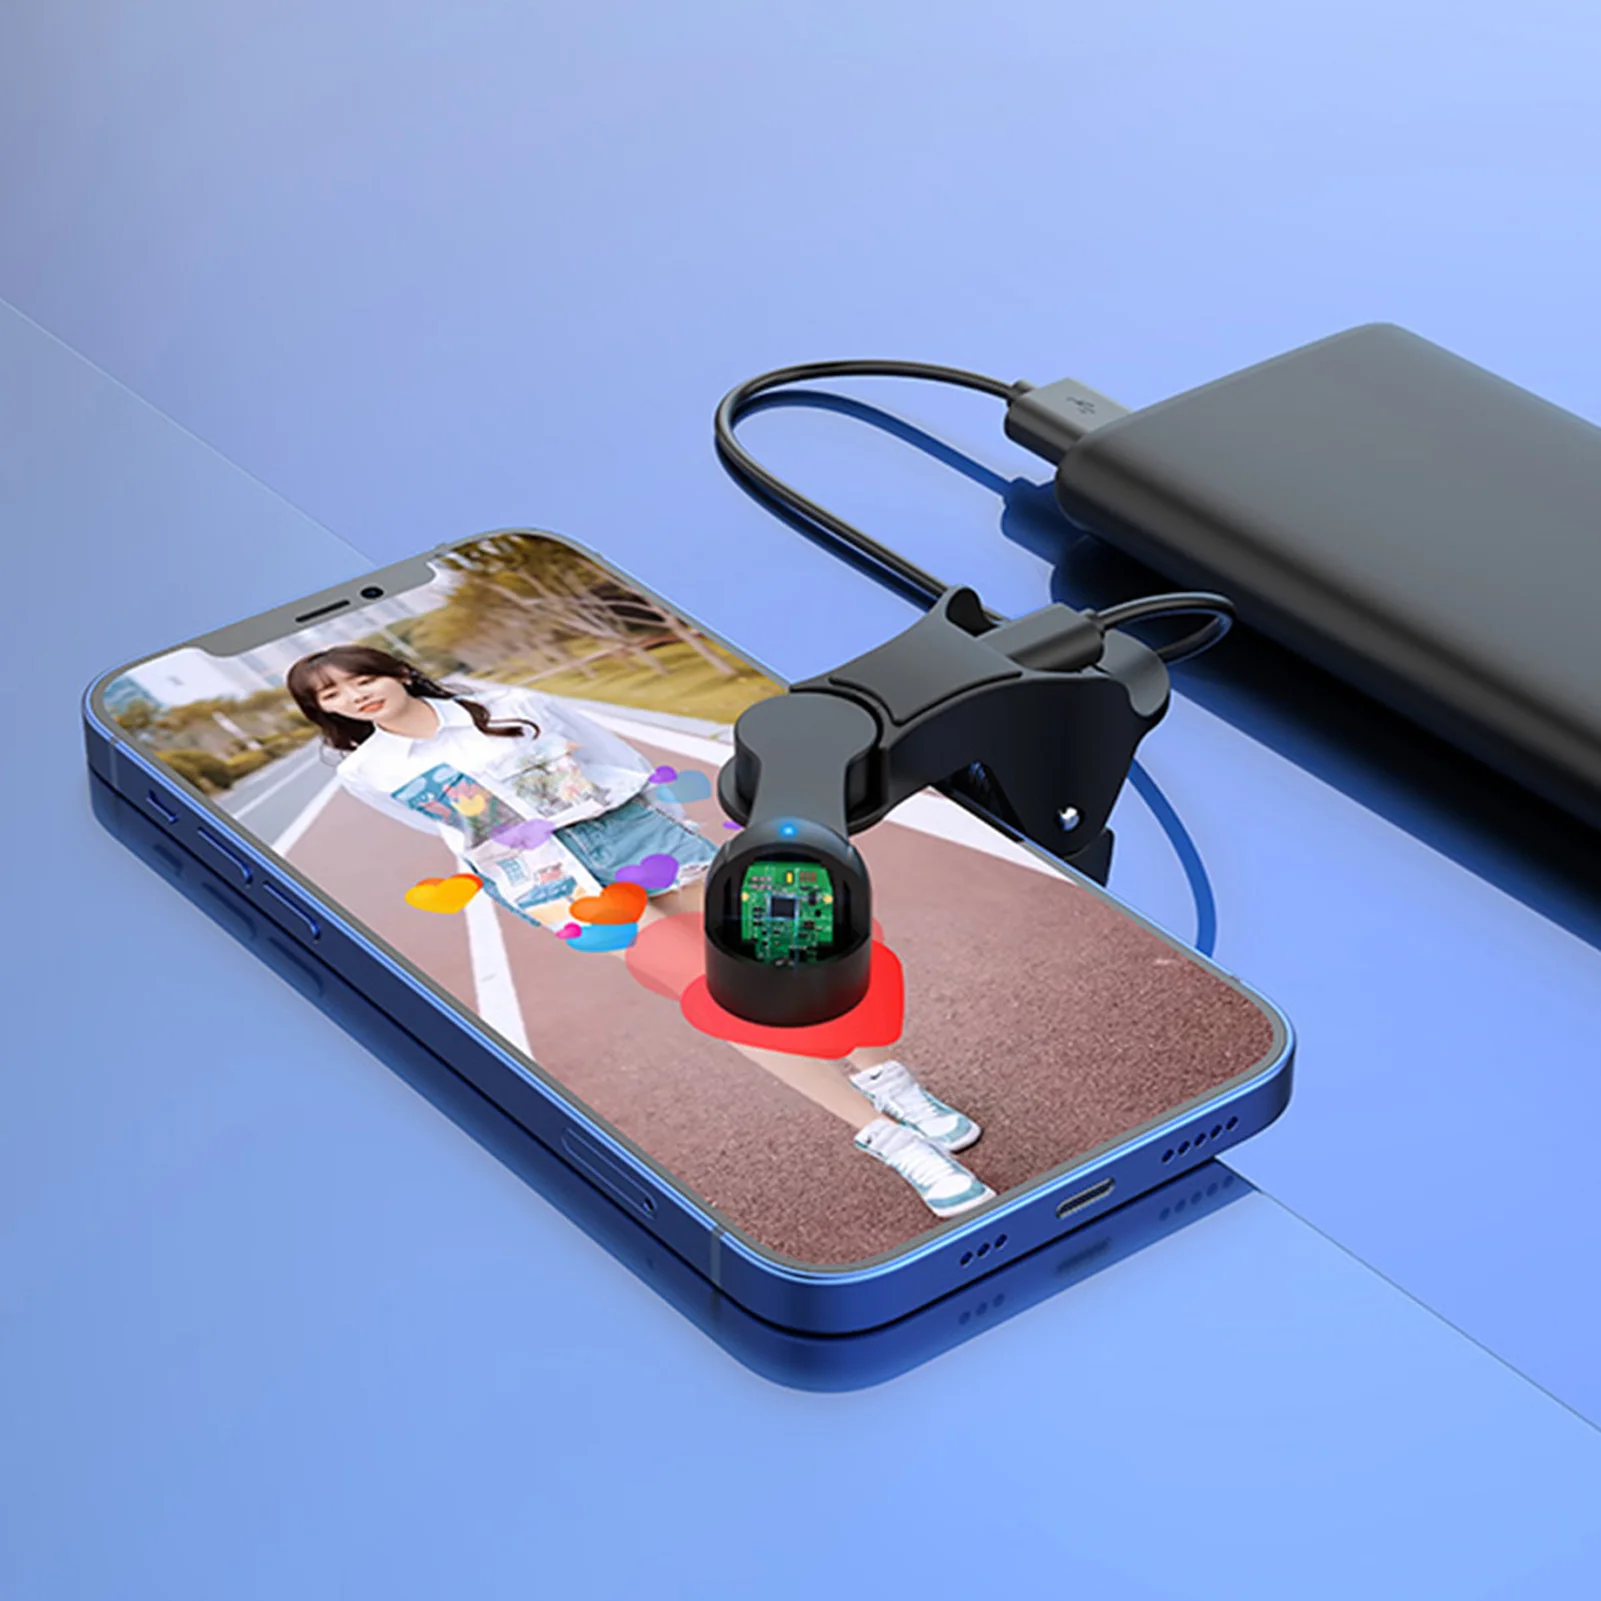 Auto Clicker עבור הטלפון אוטומטית מסך הטלפון Tapper מתכוונן אוטומטי את מכשיר הטלפון במסך Tapper מדומה האצבע לחיצה - 4